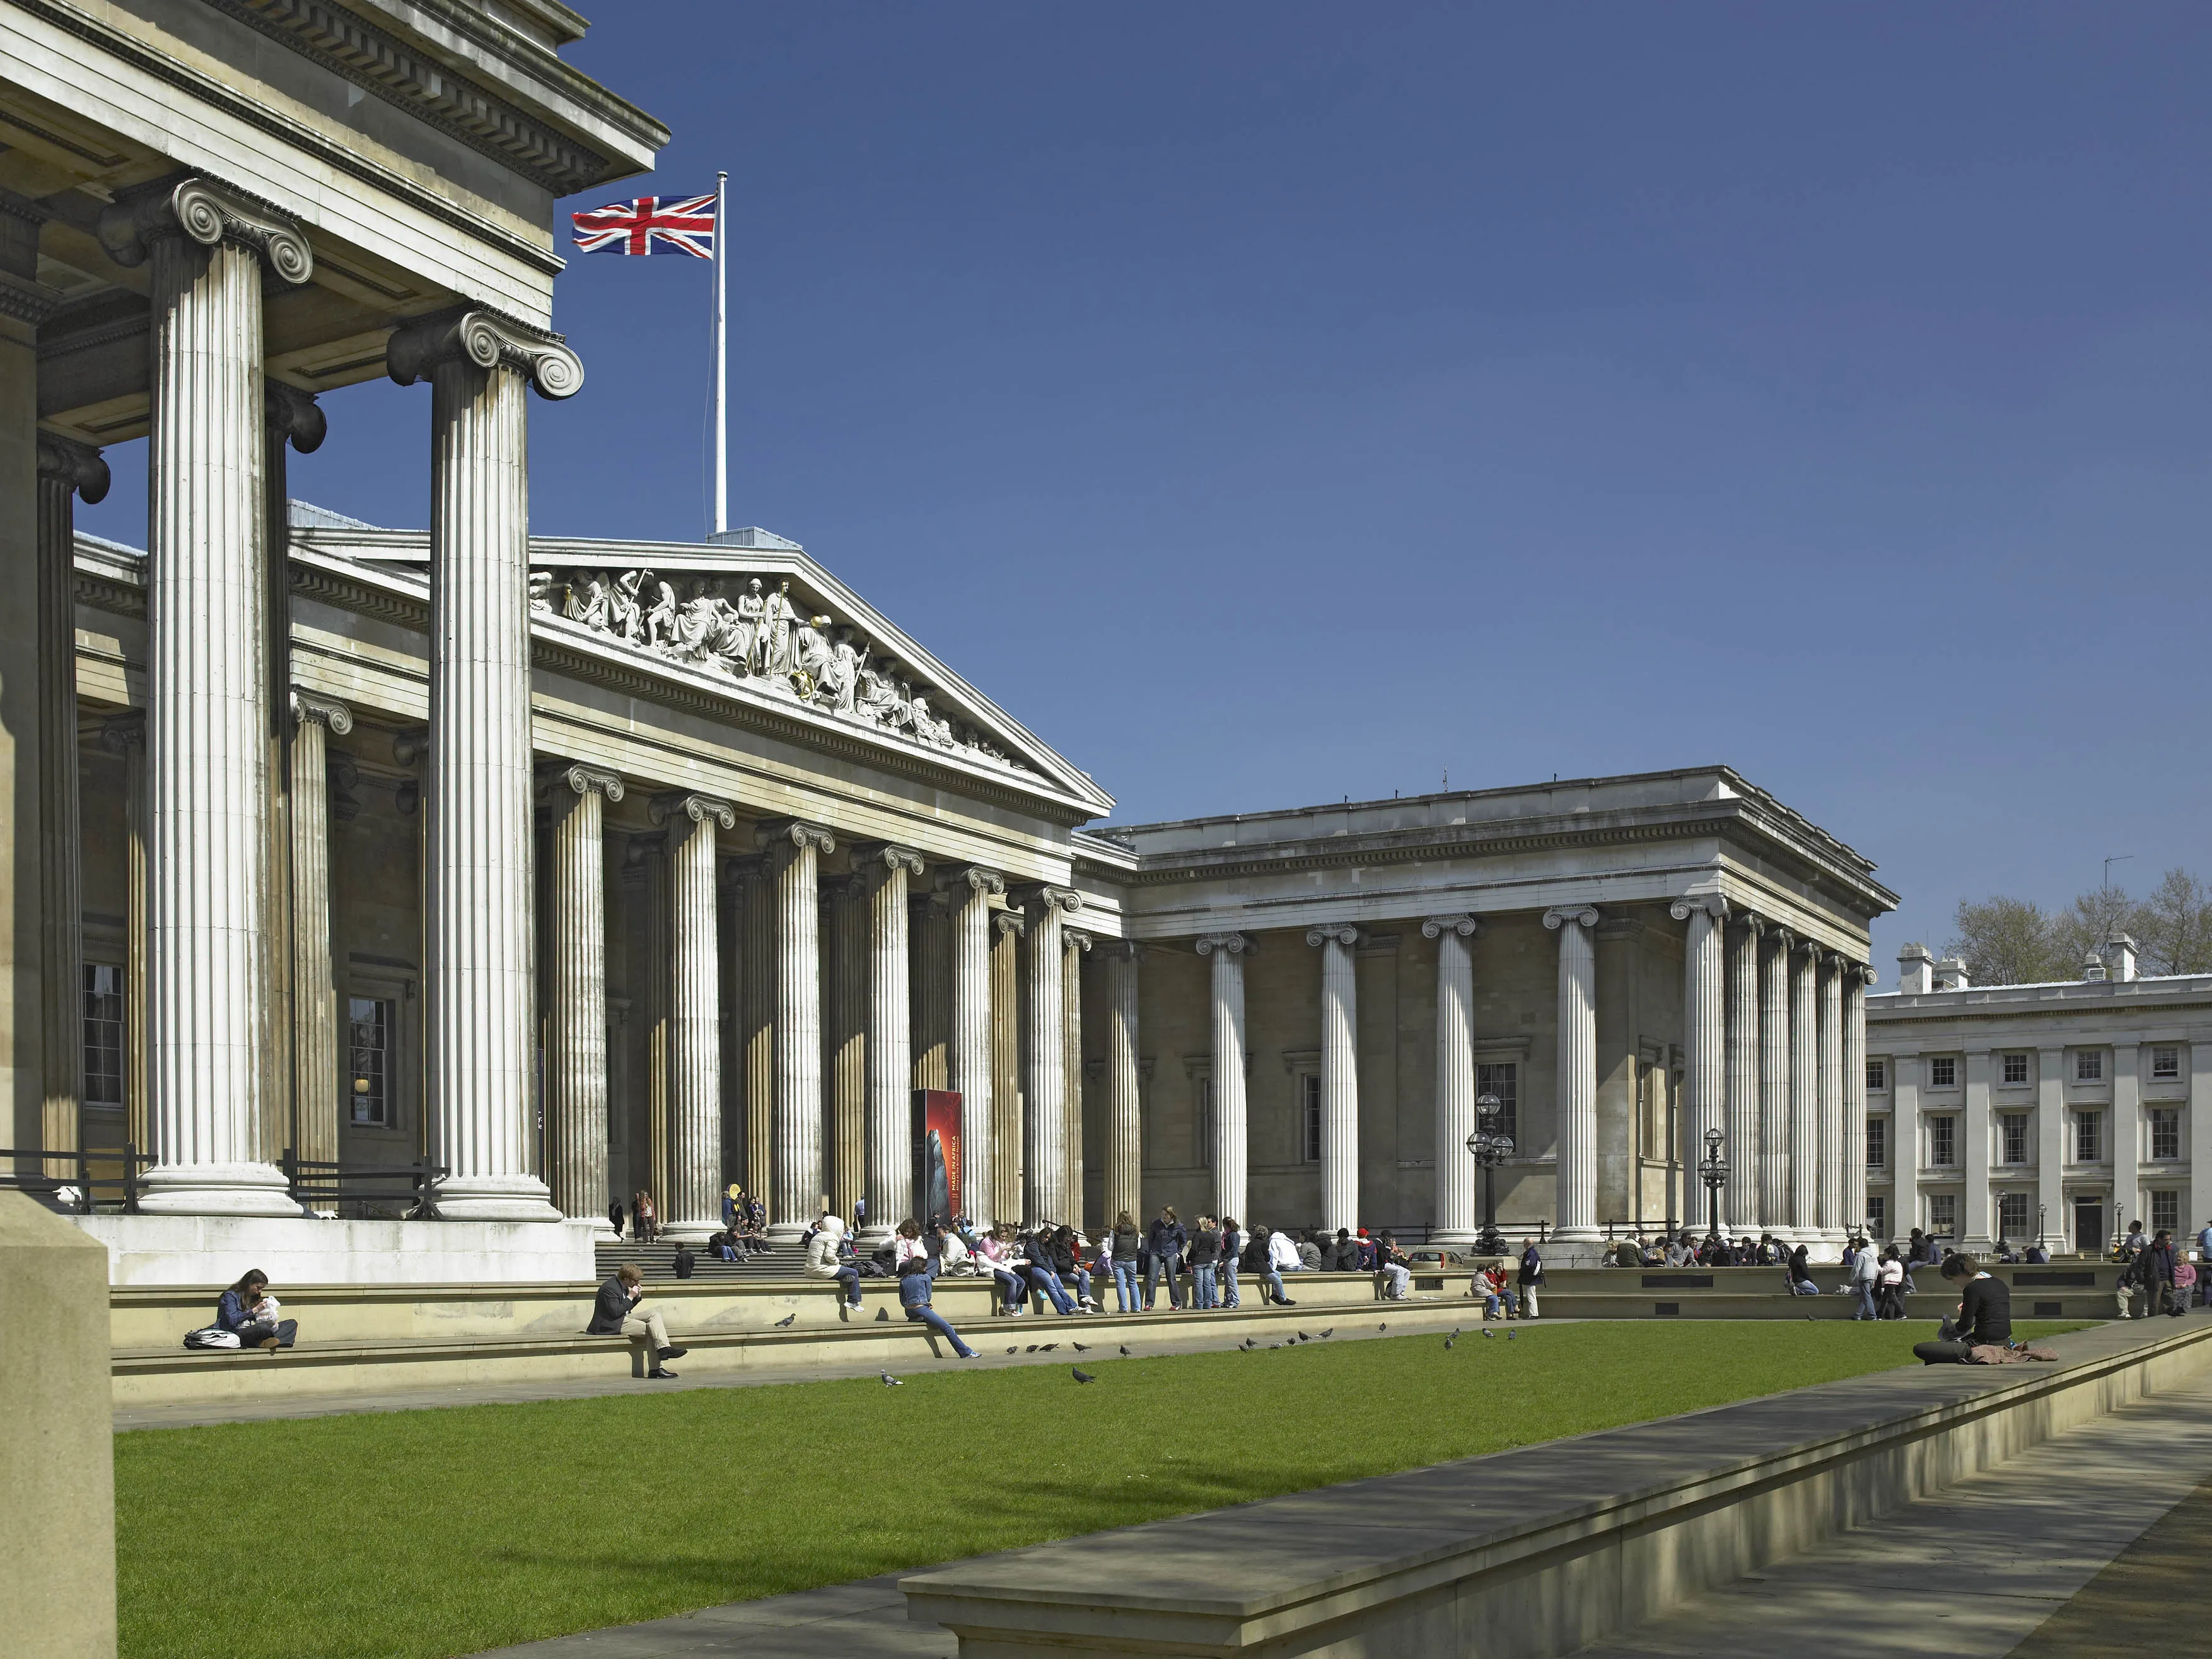 المتحف البريطاني